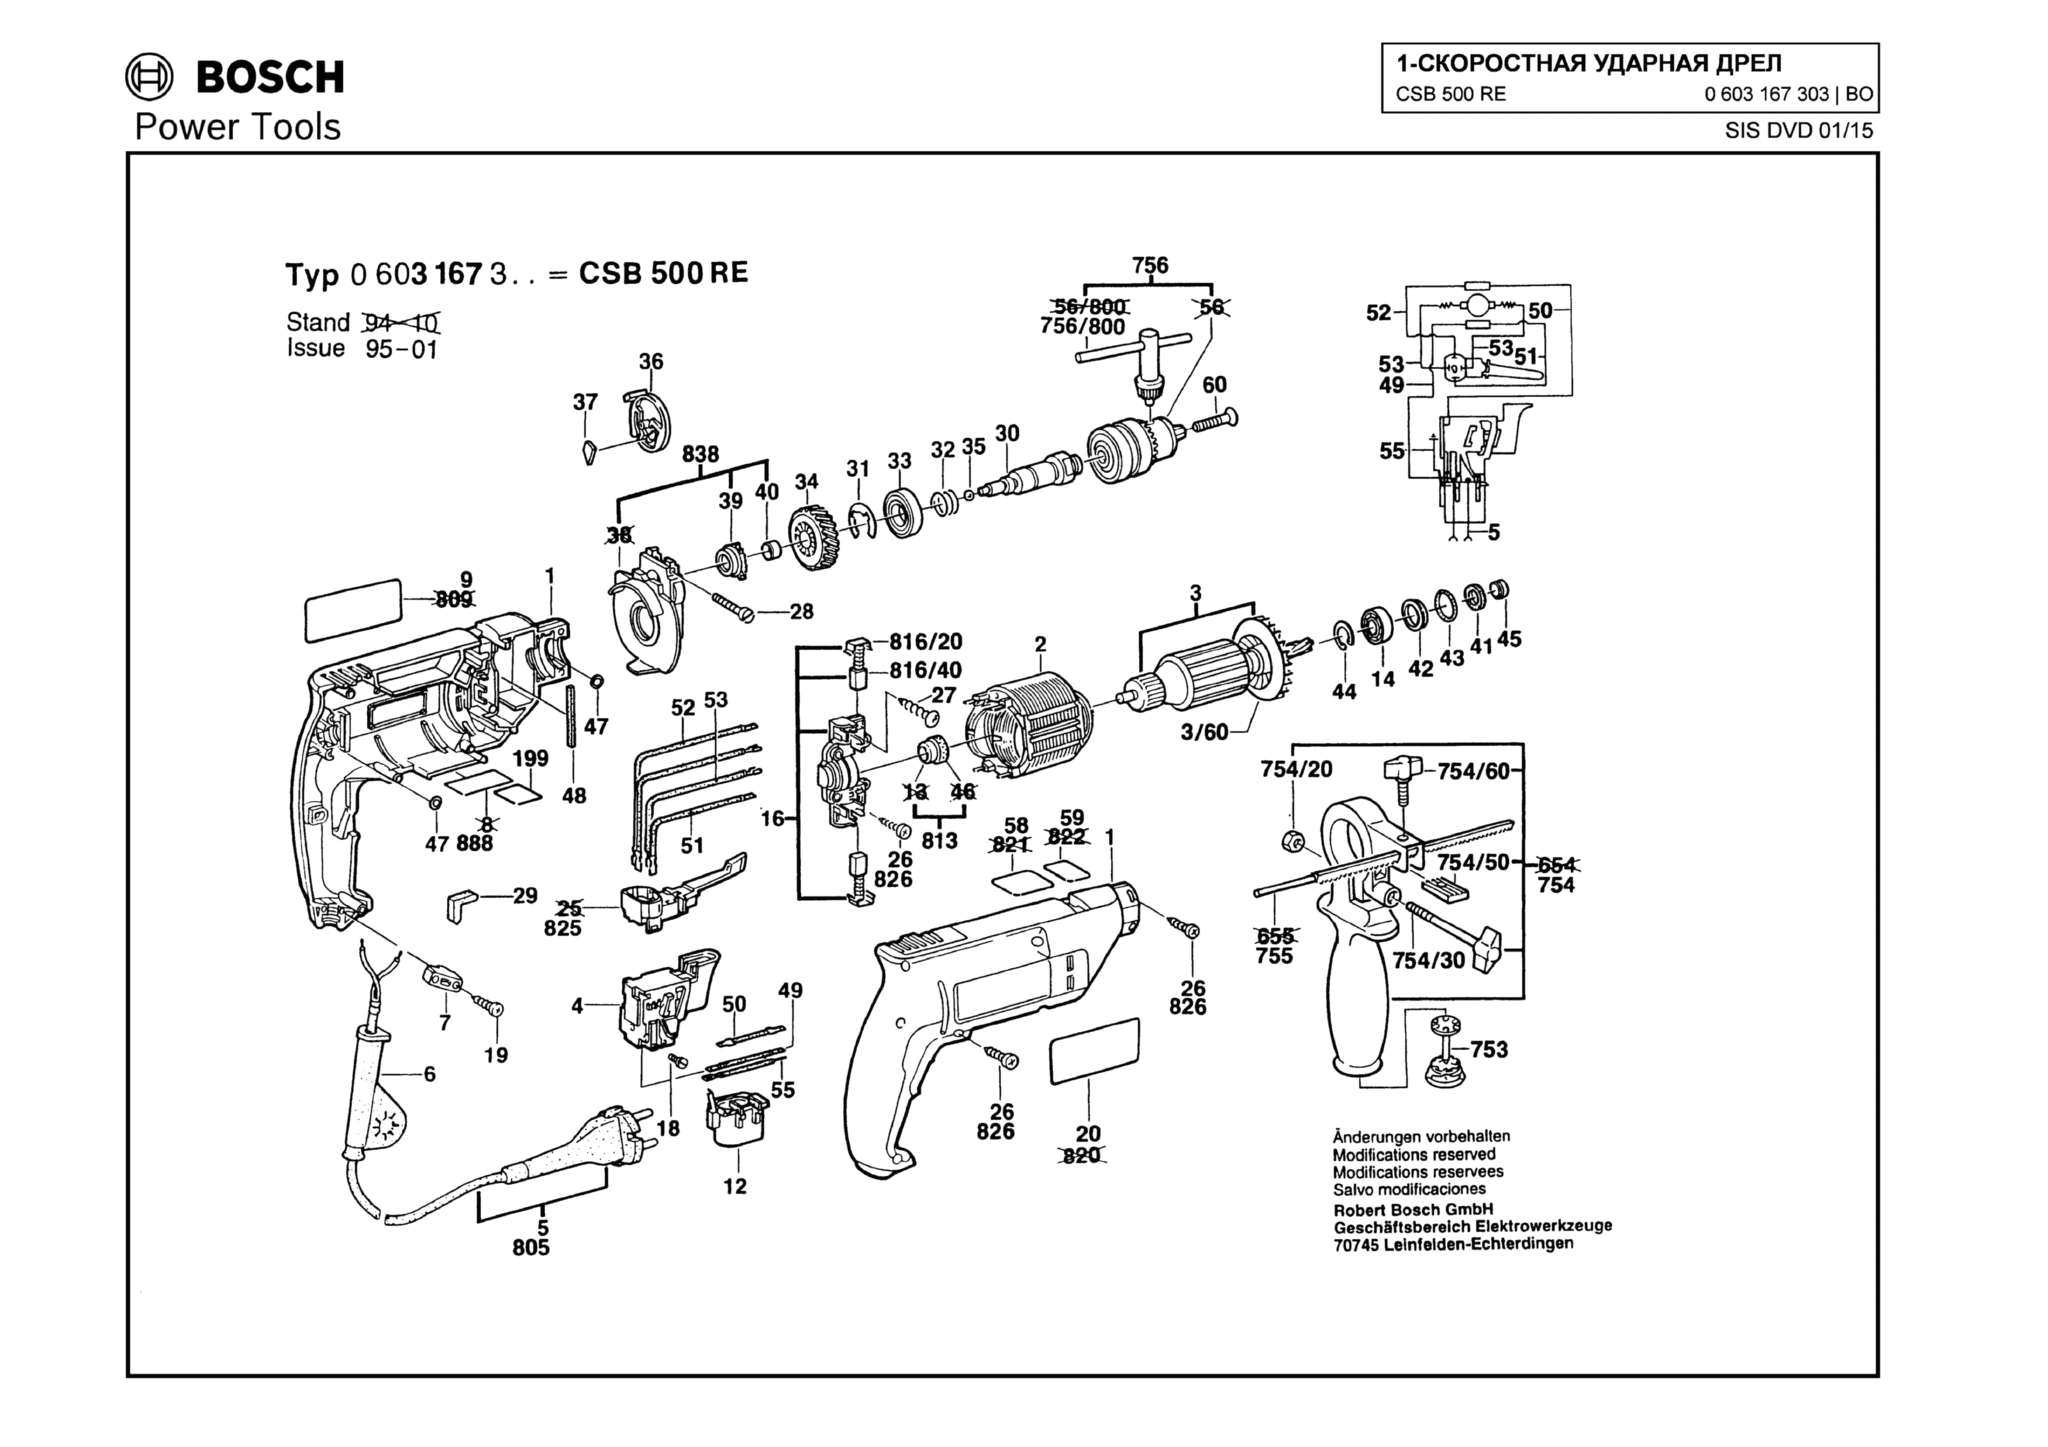 Запчасти, схема и деталировка Bosch CSB 500 RE (ТИП 0603167303)